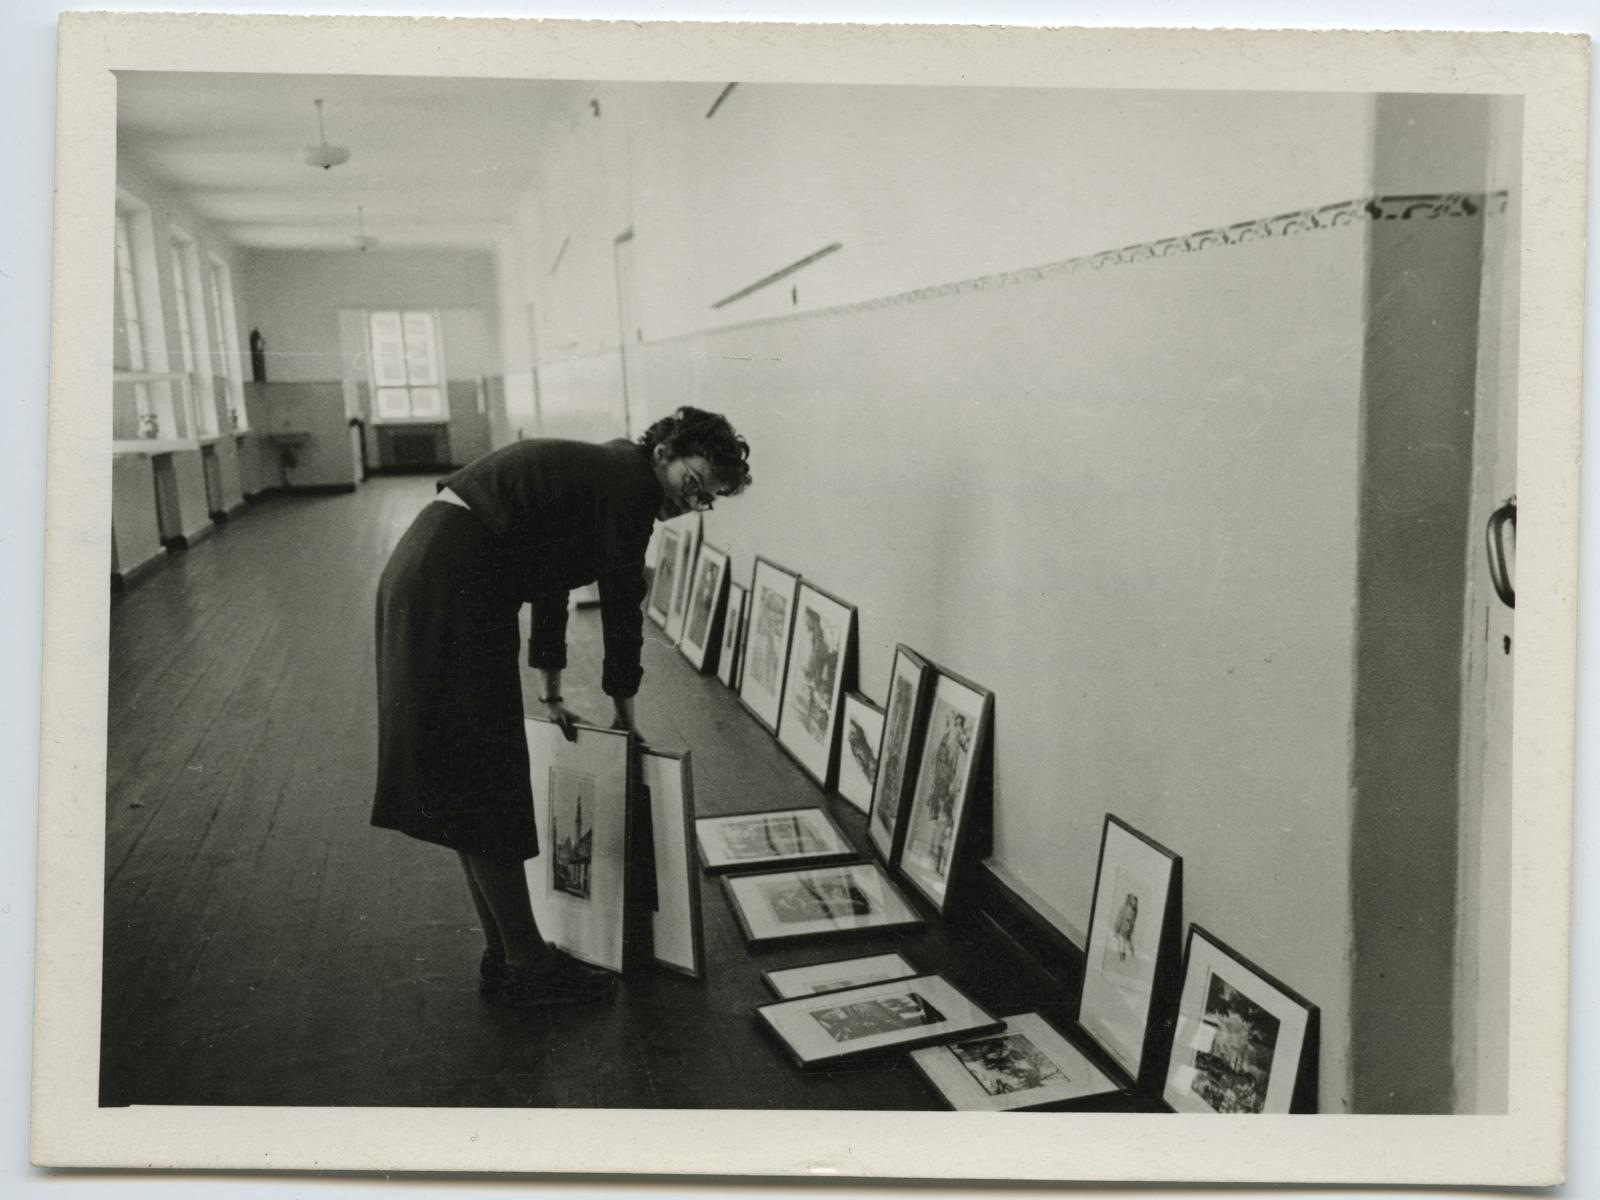 Teaduslik töötaja T. Kuusik kujundab rändnäitust "Eesti nõukogude graafika" Tõrva Keskkoolis 1961